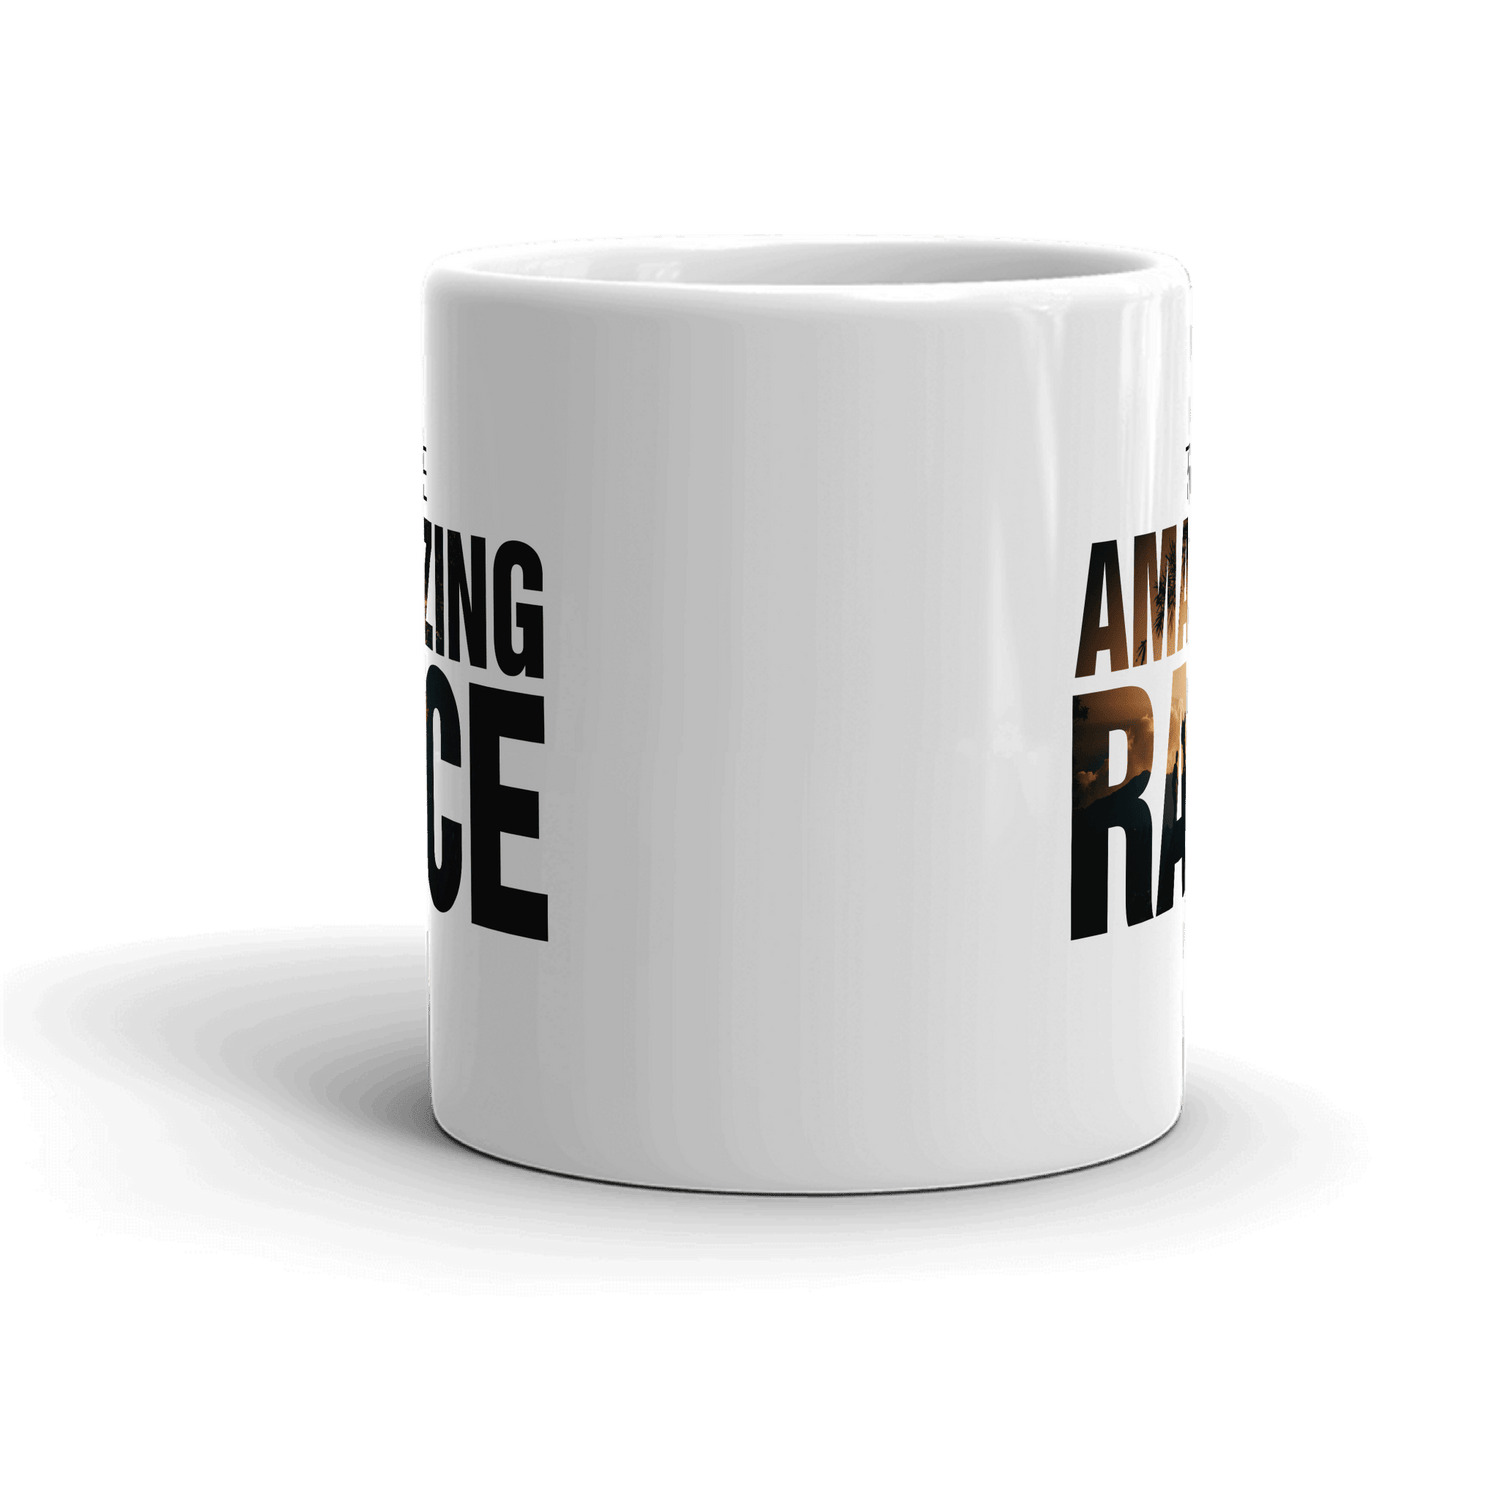 The Amazing Race Color Logo White Mug - Paramount Shop